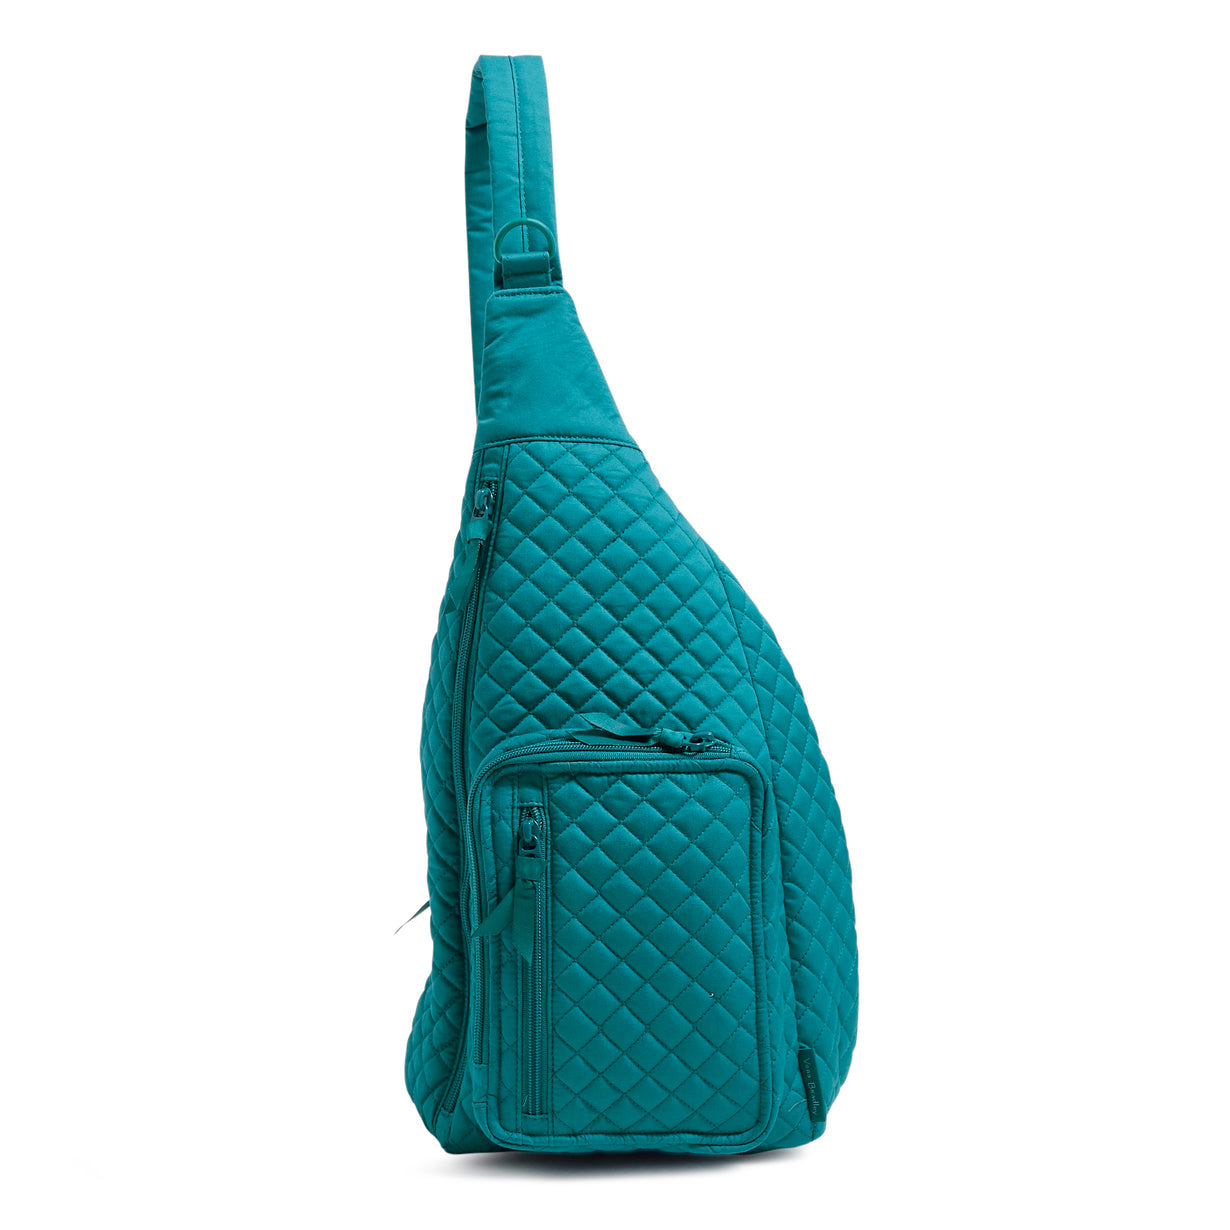 A Vera Bradley Sling Backpack, in Forever Green.